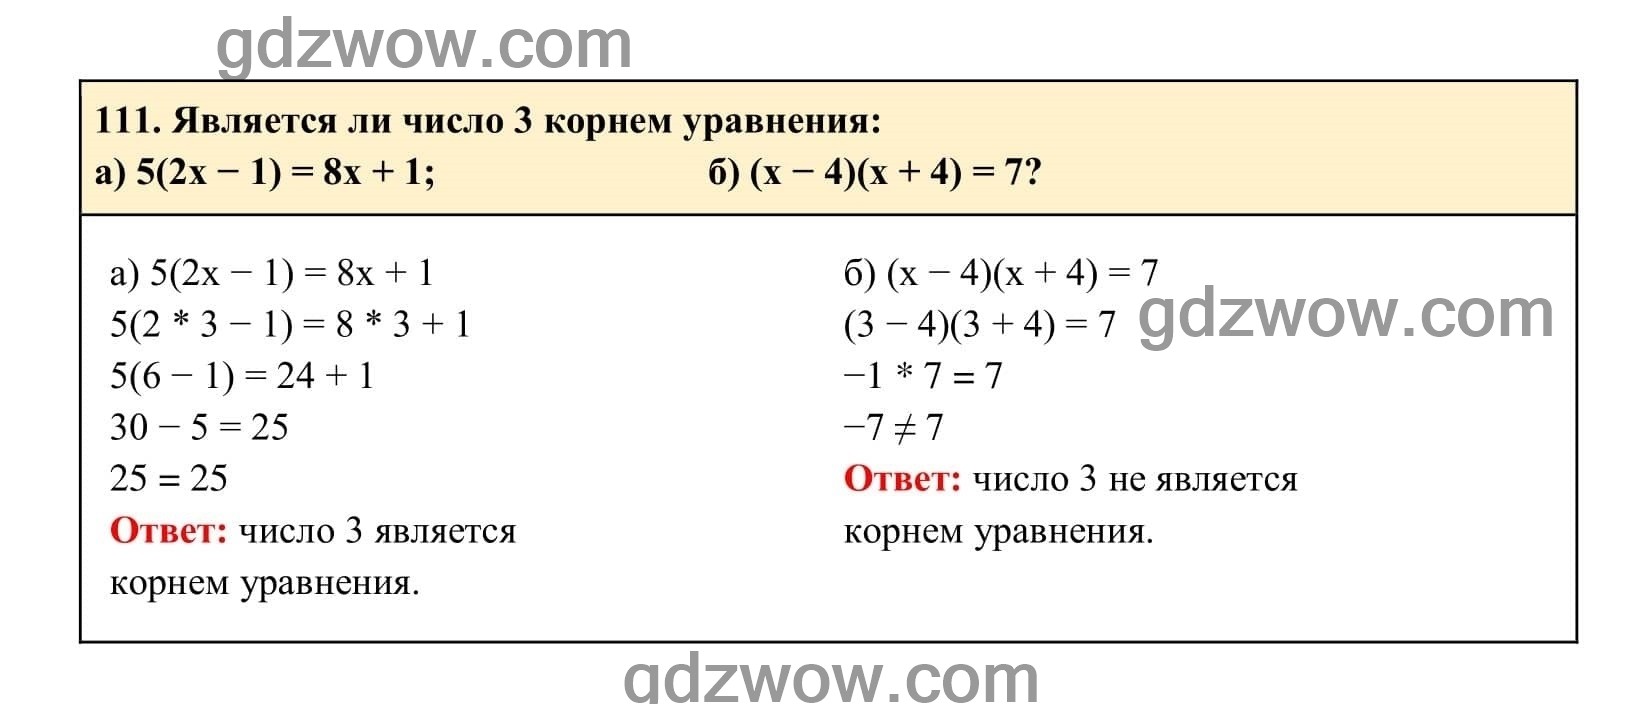 Упражнение 111 - ГДЗ по Алгебре 7 класс Учебник Макарычев (решебник) - GDZwow